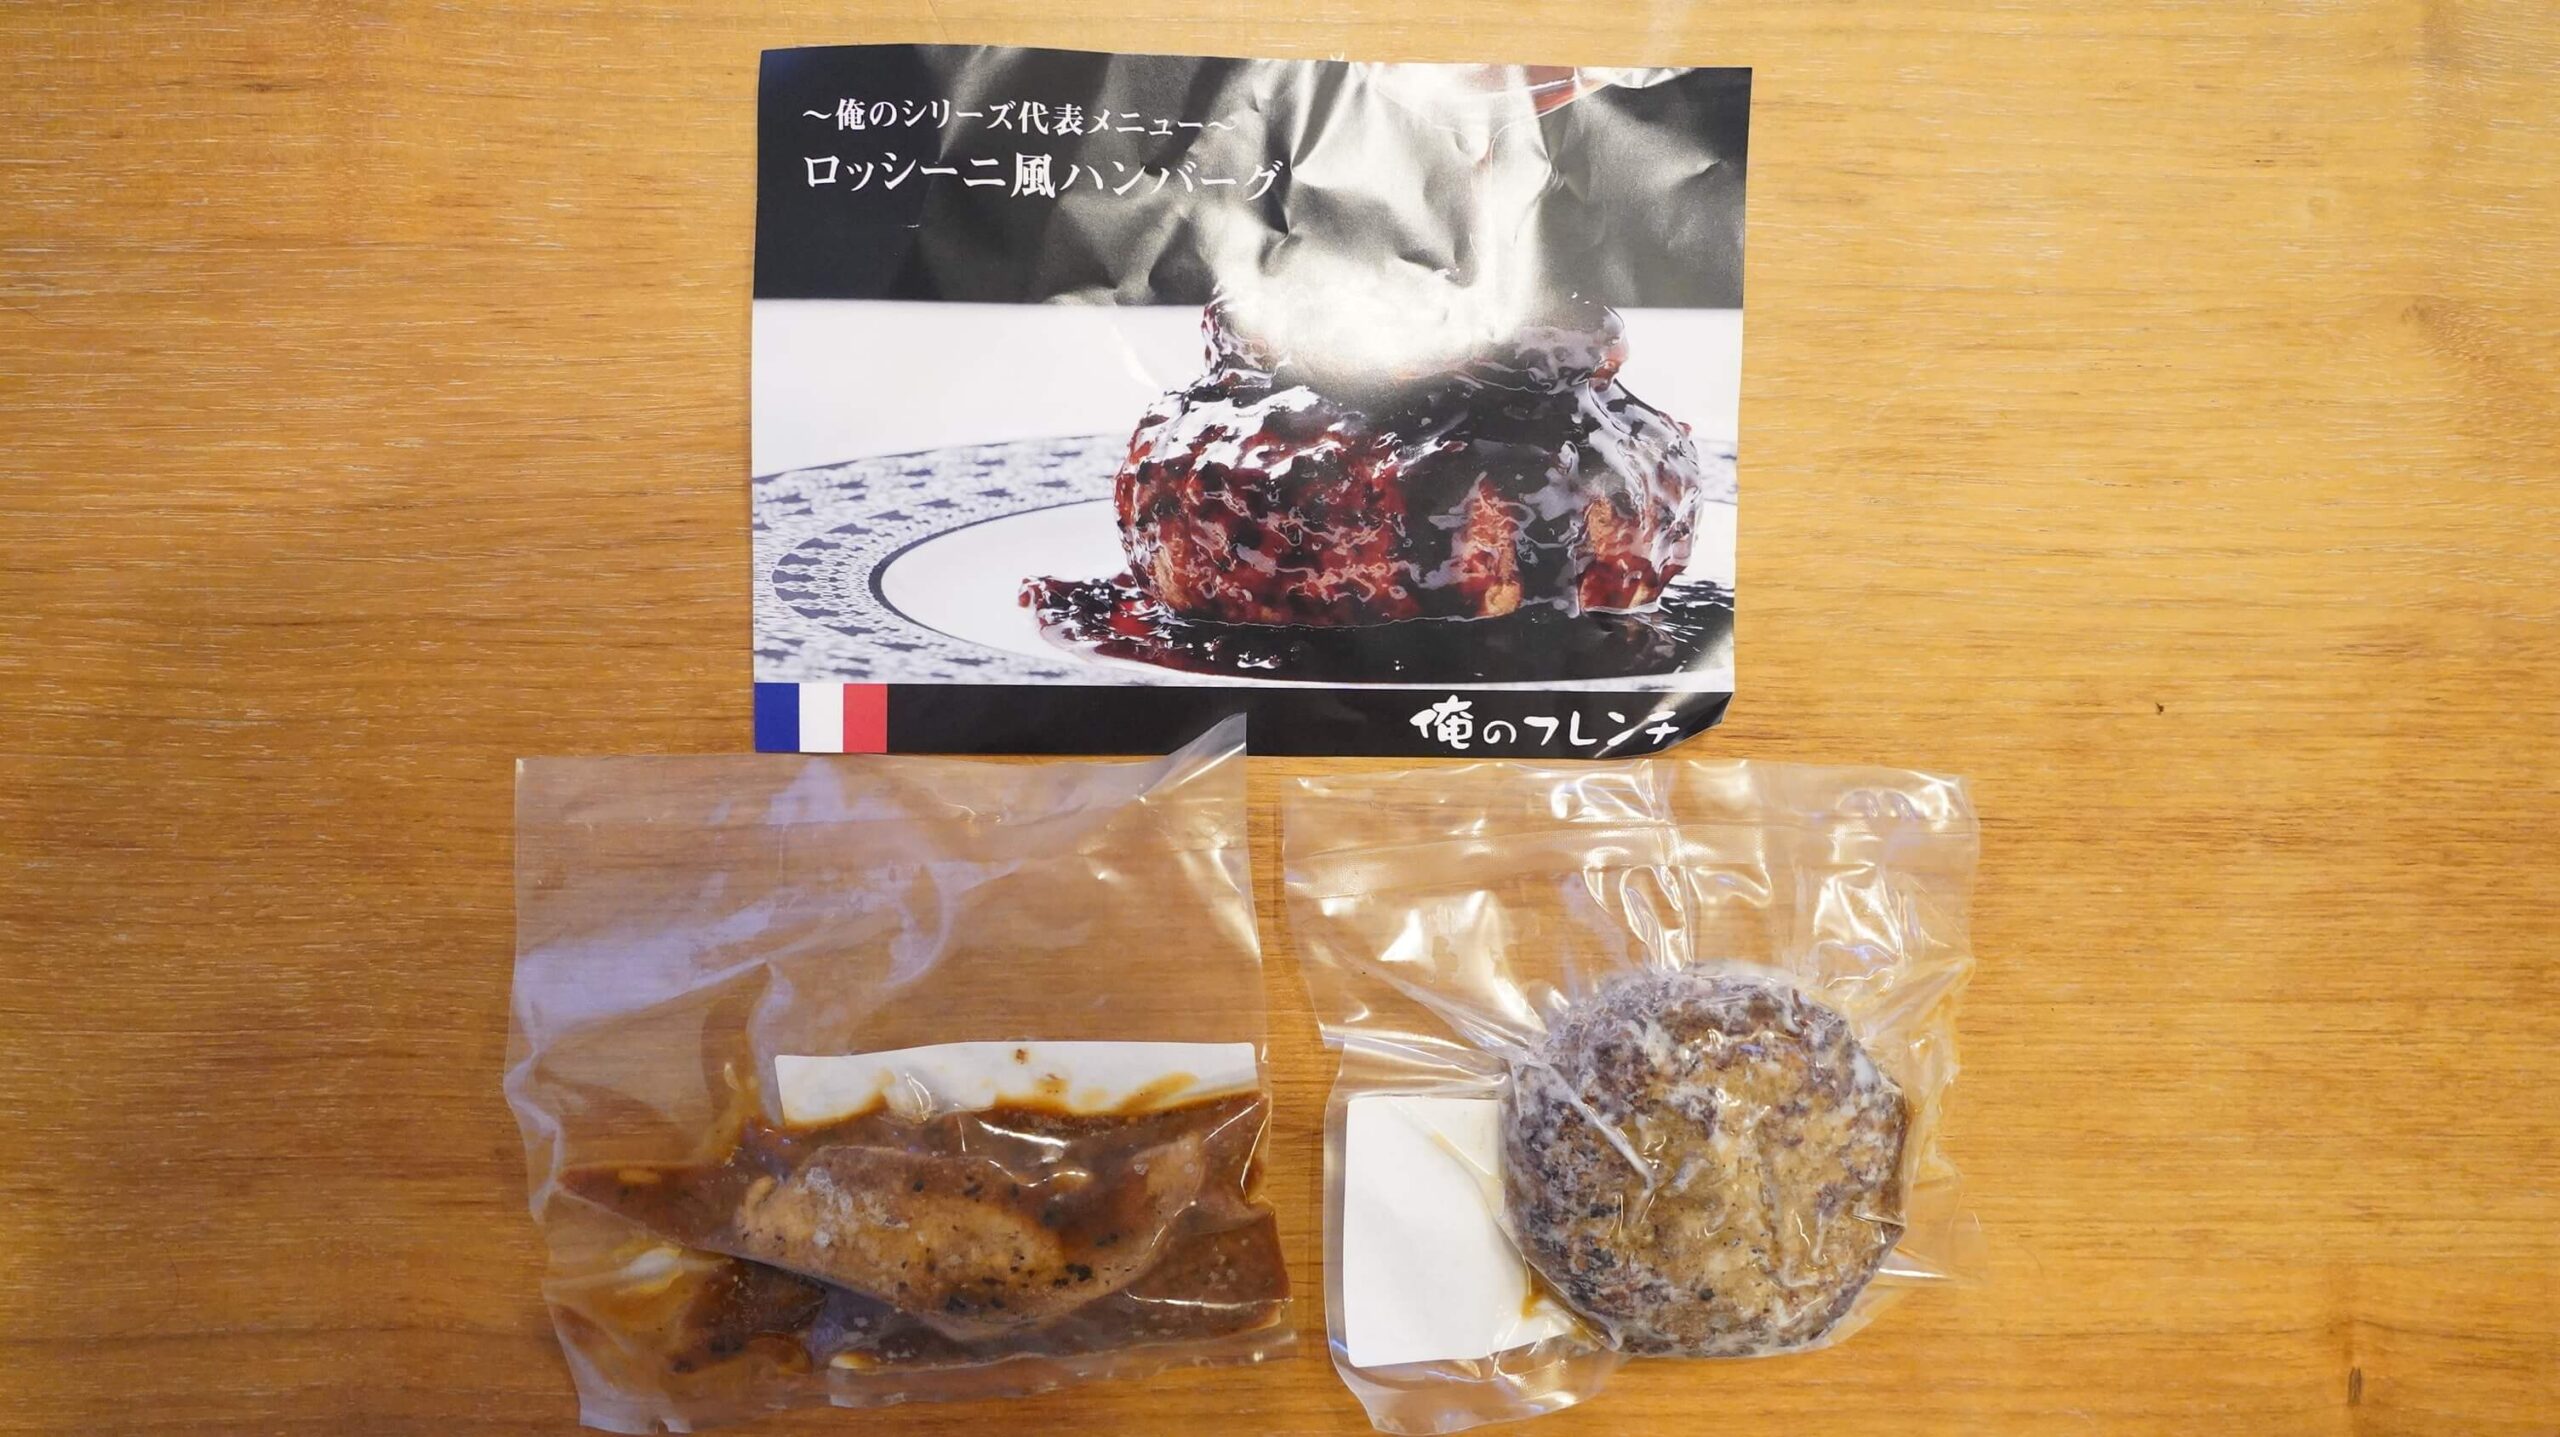 俺のフレンチの冷凍食品「ロッシーニ風ハンバーグ」のパッケージ写真